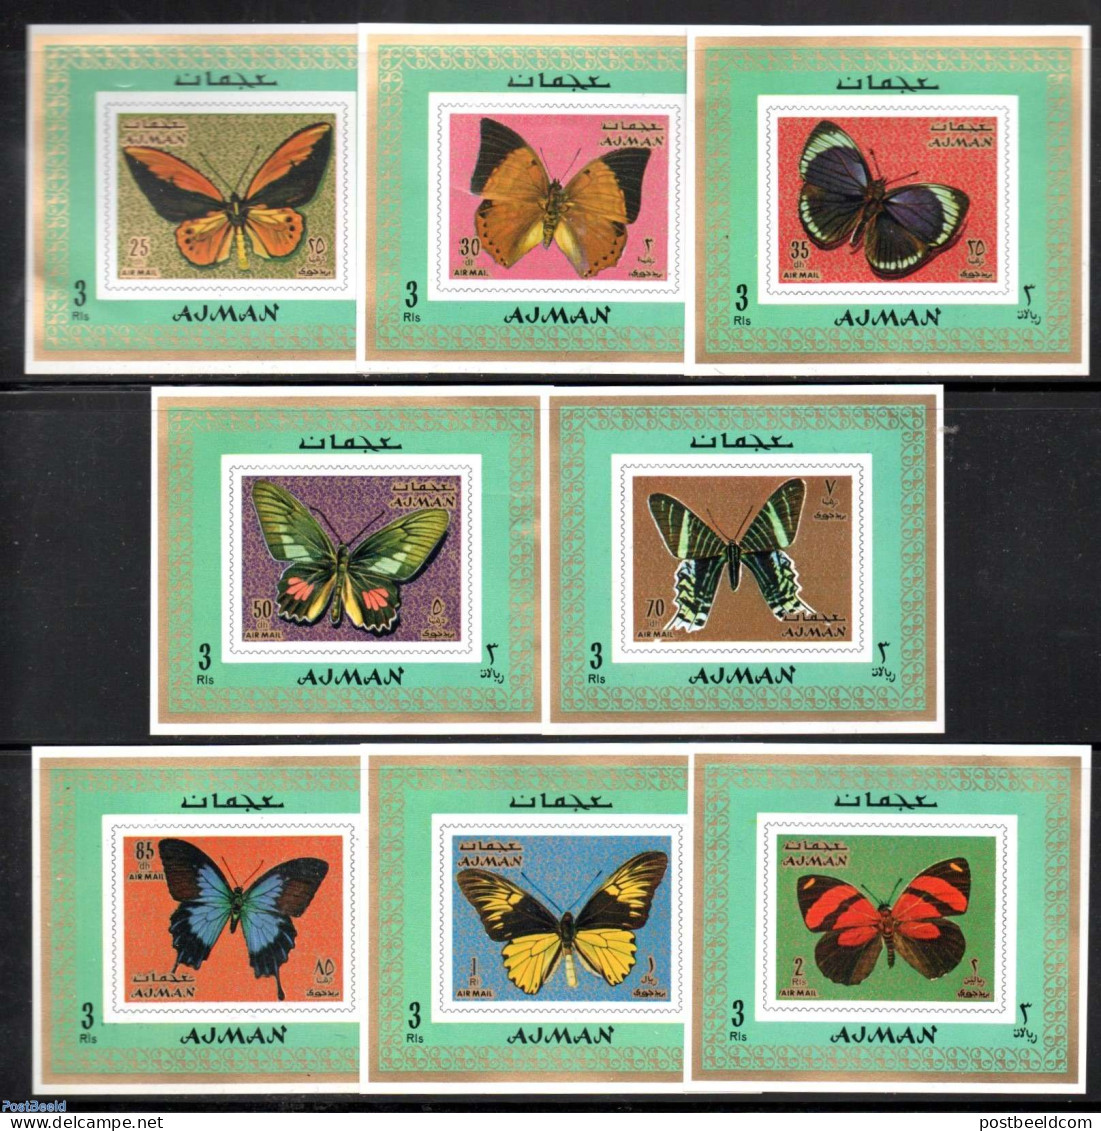 Ajman 1971 Butterflies 8 S/s, Mint NH, Nature - Butterflies - Adschman